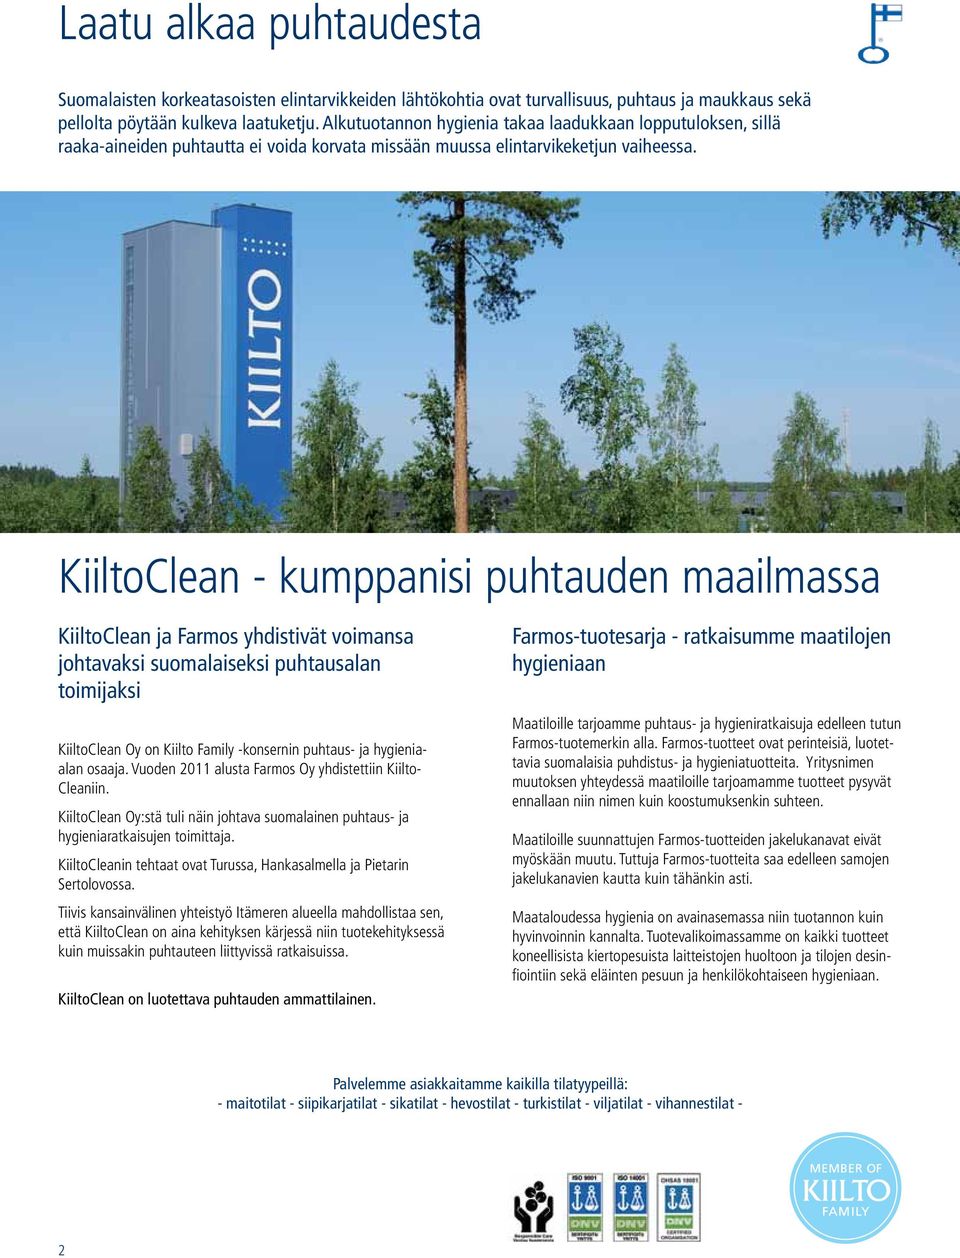 KiiltoClean - kumppanisi puhtauden maailmassa KiiltoClean ja Farmos yhdistivät voimansa johtavaksi suomalaiseksi puhtausalan toimijaksi KiiltoClean Oy on Kiilto Family -konsernin puhtaus- ja